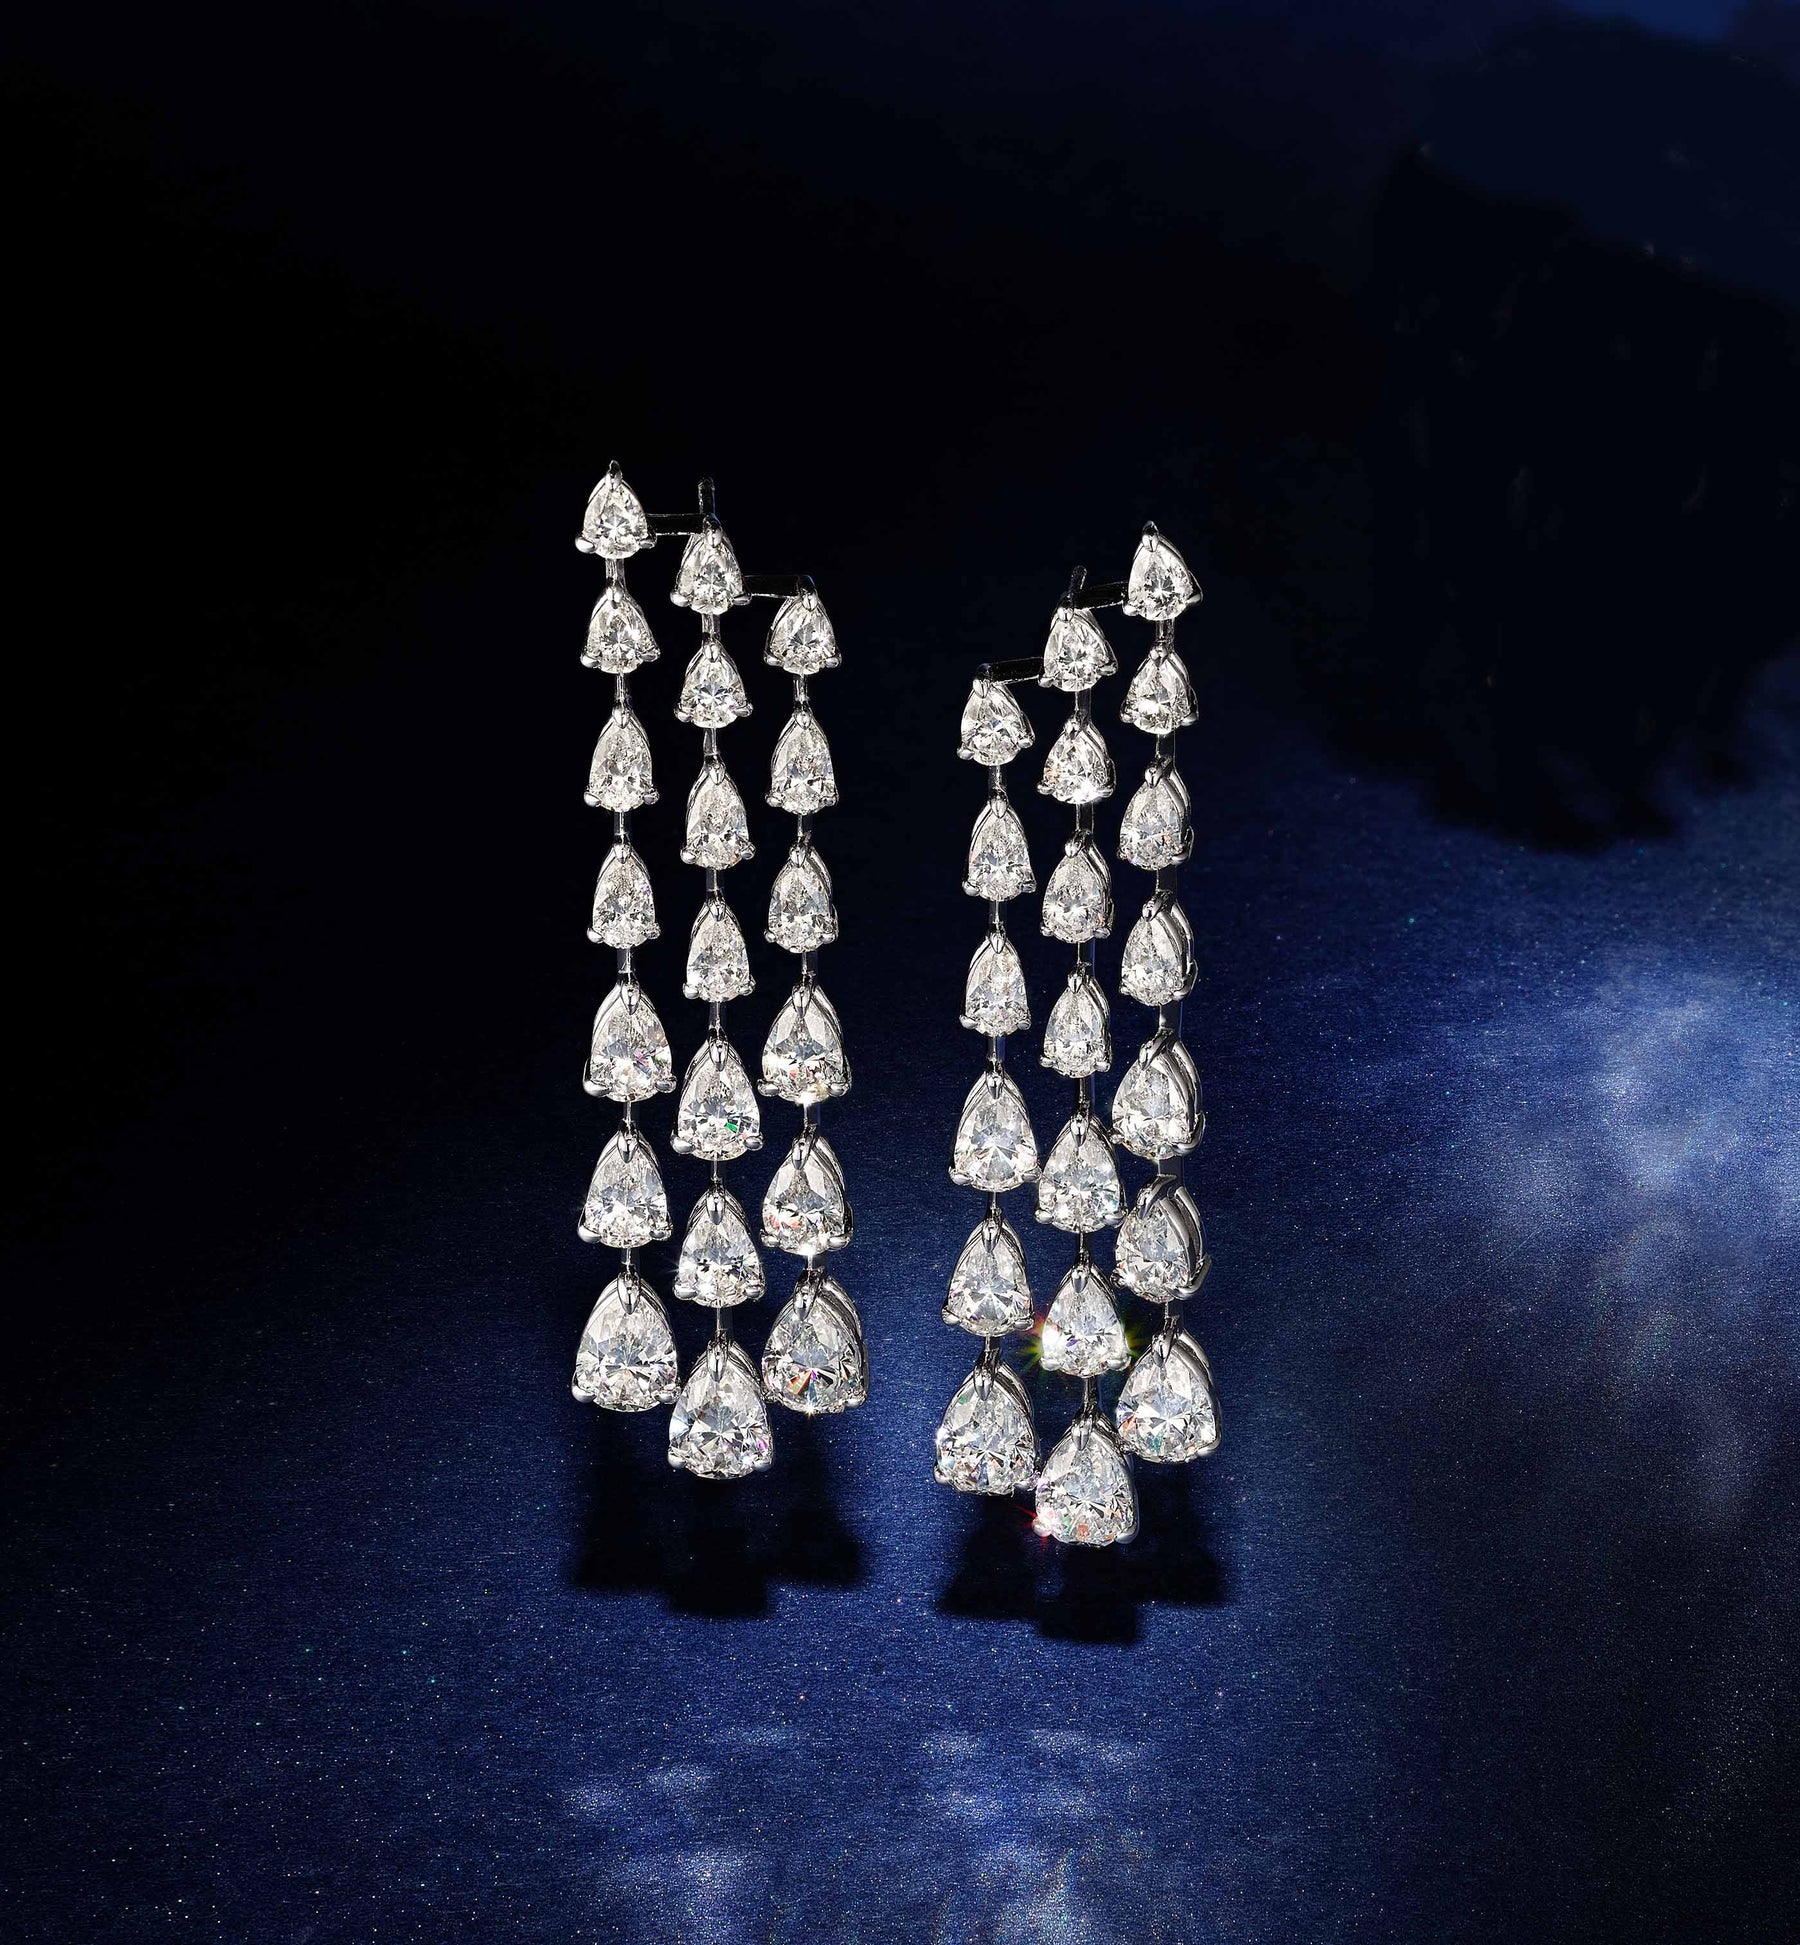 Creative | Silver chandelier earrings, Chandelier earrings, Jewelry  inspiration